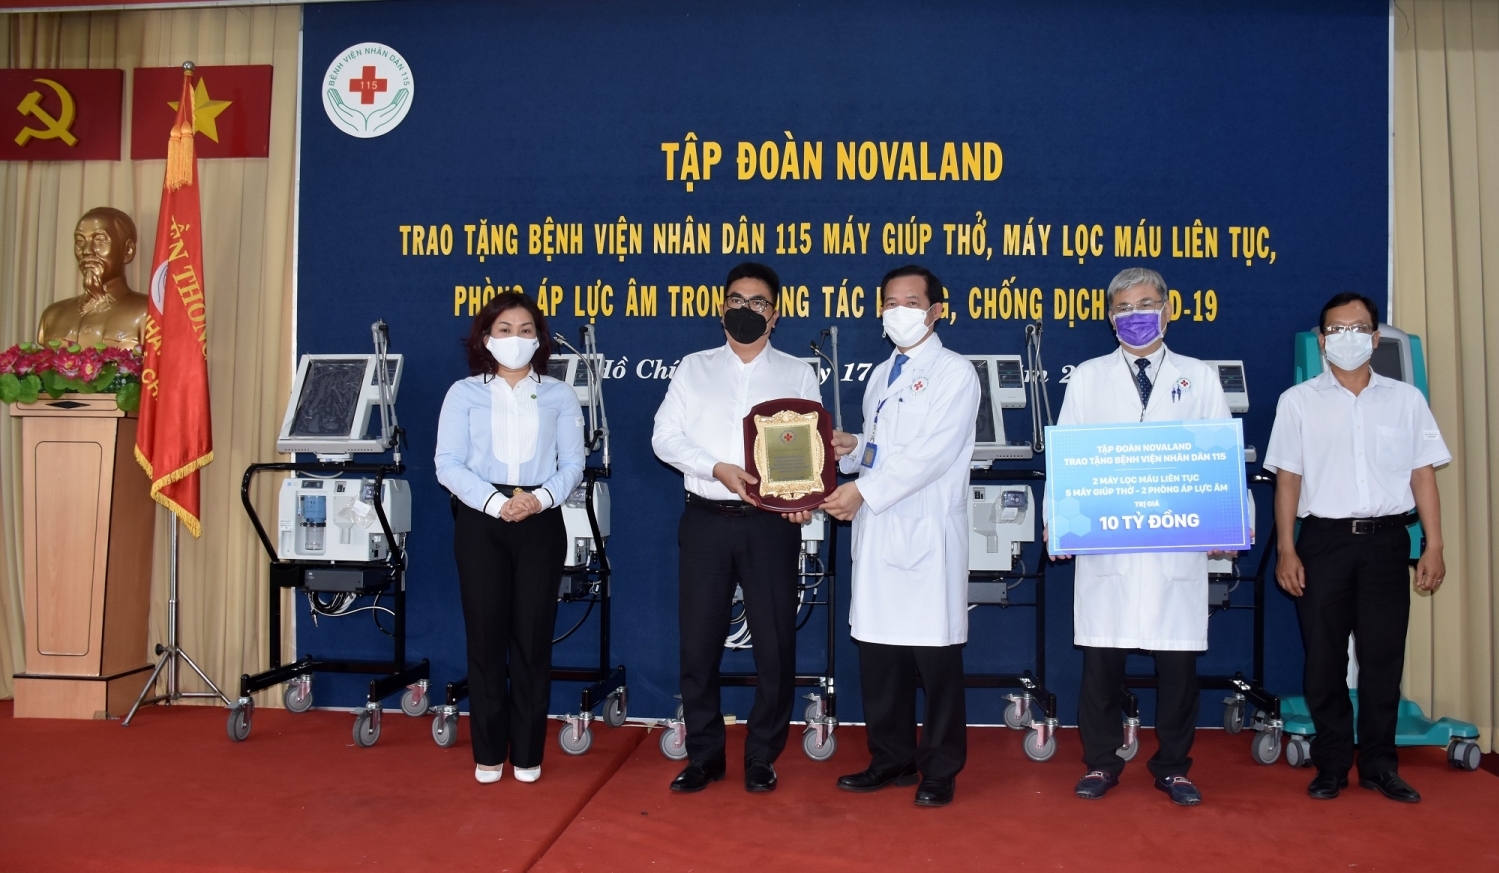 Novaland tặng Bệnh viện Nhân Dân 115 thiết bị Y tế trị chống dịch Covid-19 trị giá 10 tỷ đồng